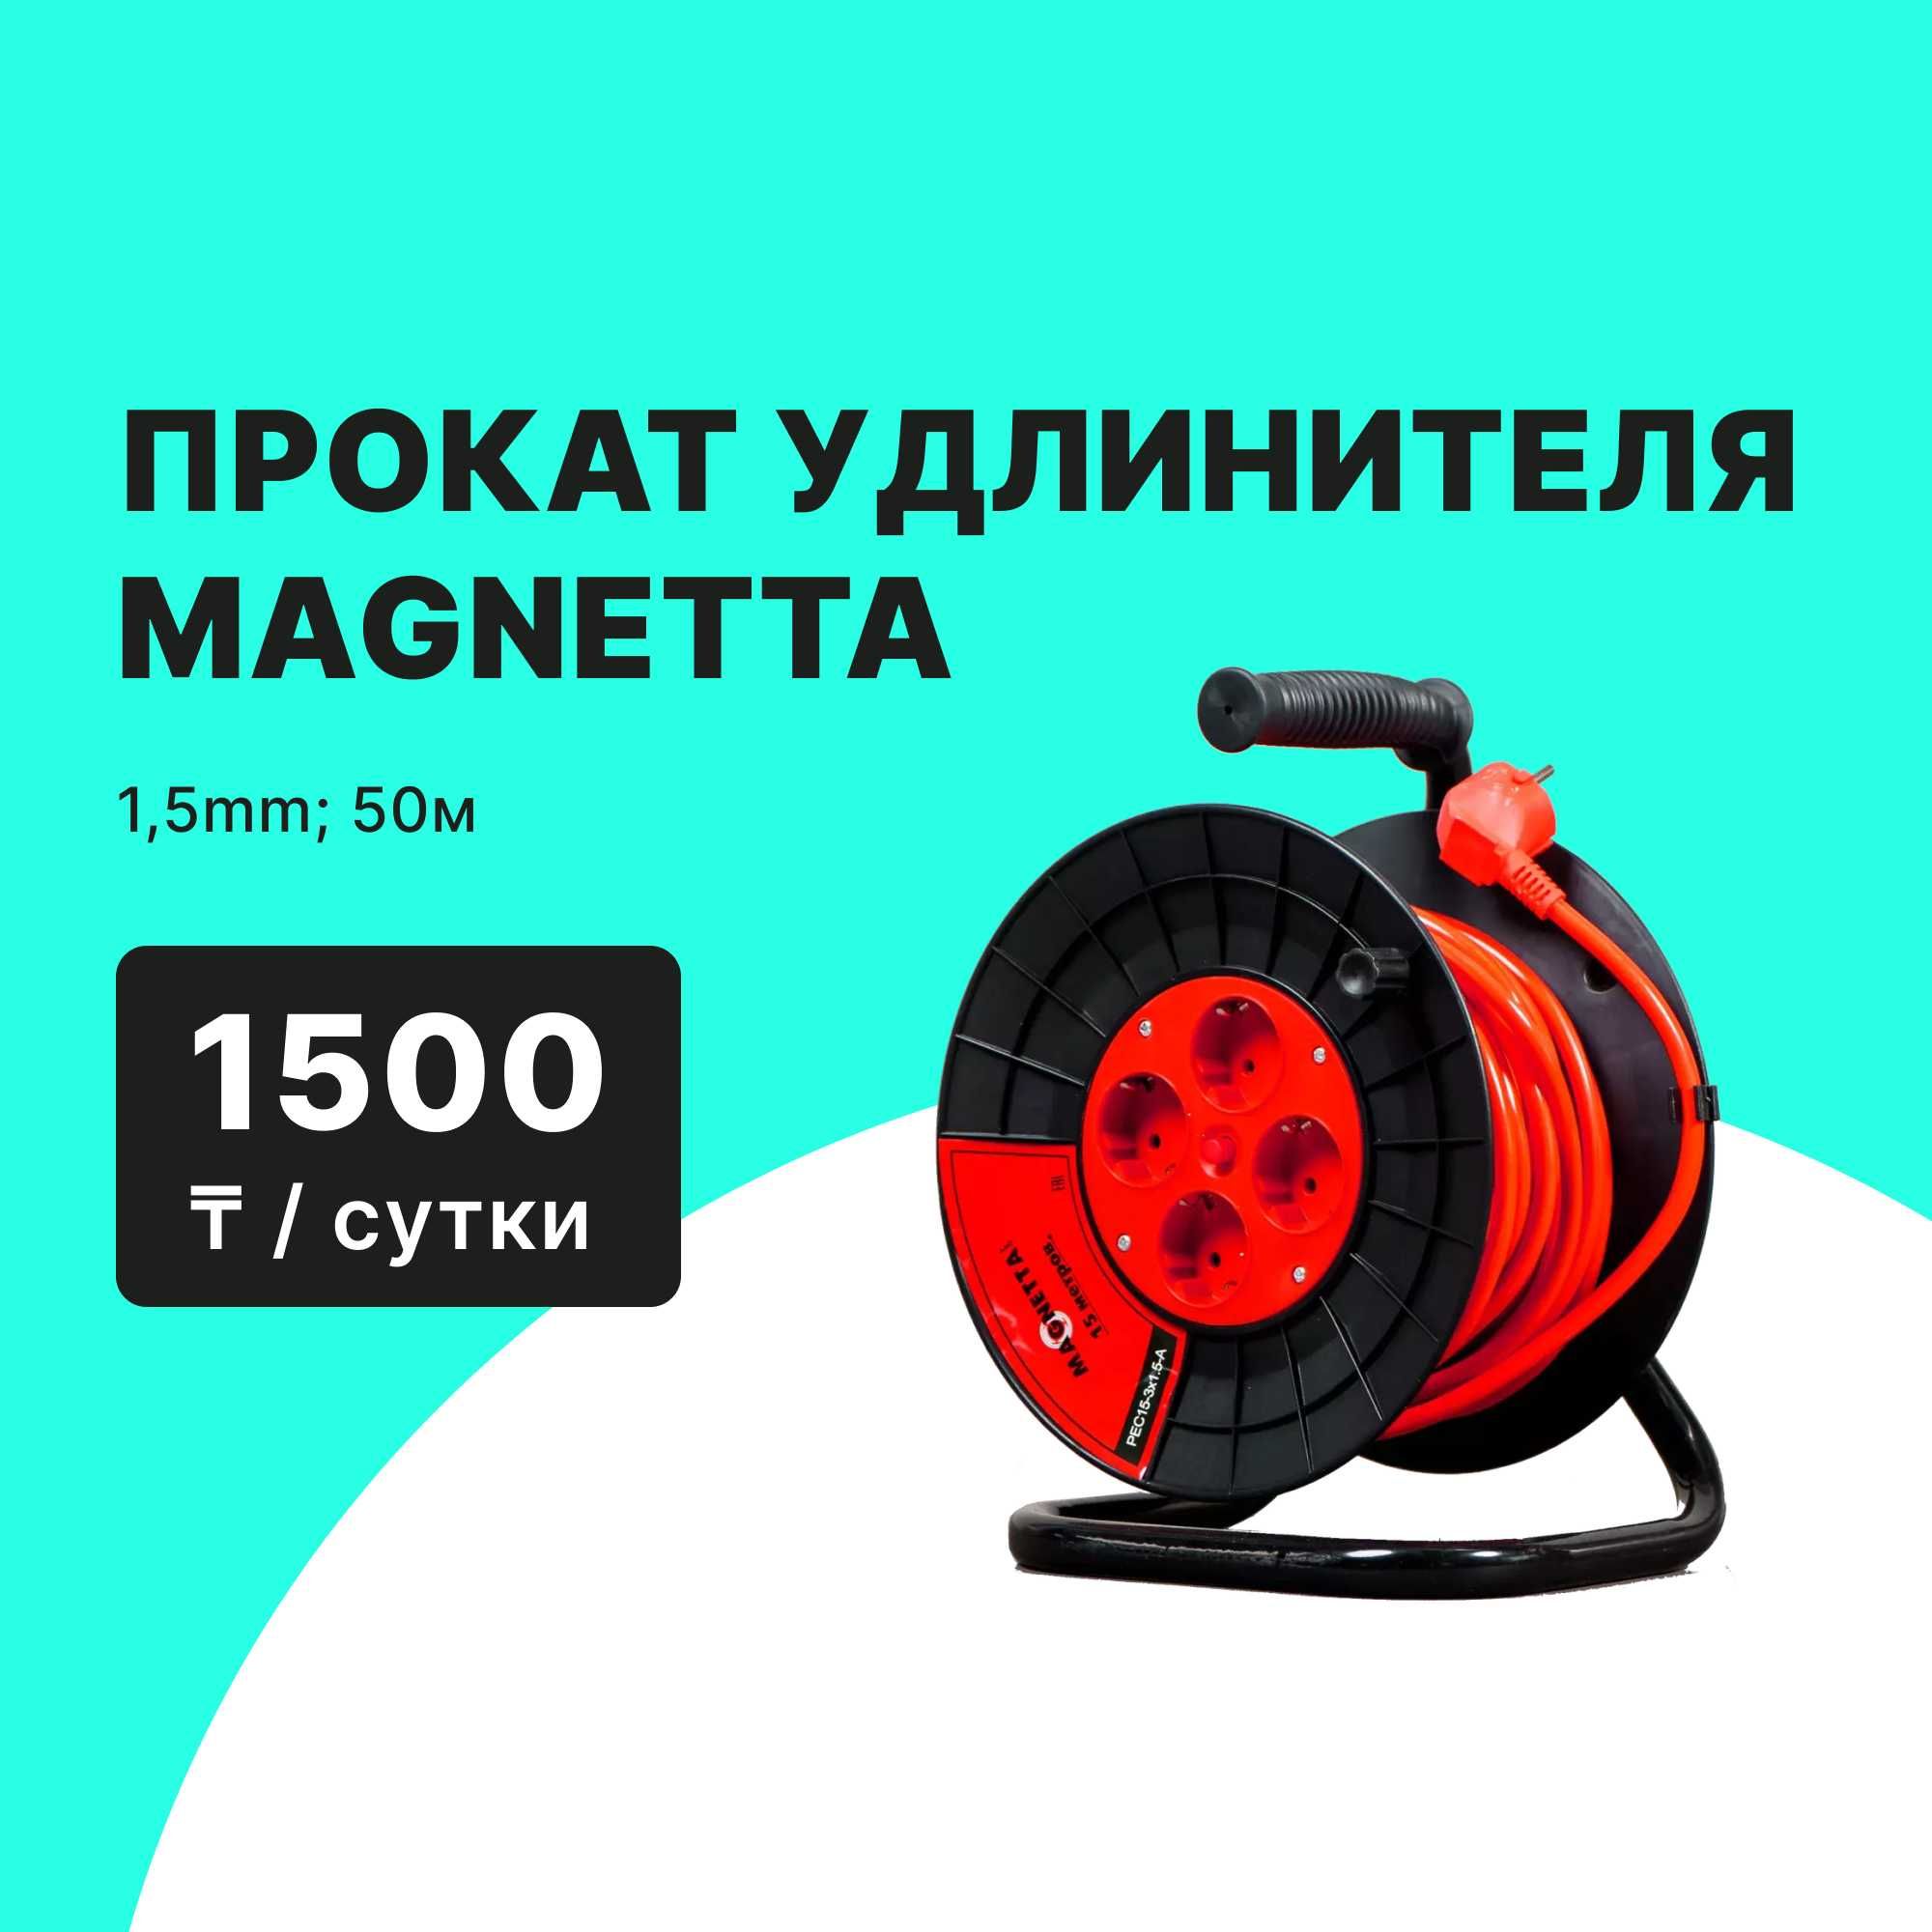 Сварочный генератор MAGNETTA прокат аренда от 10000 тг сутки